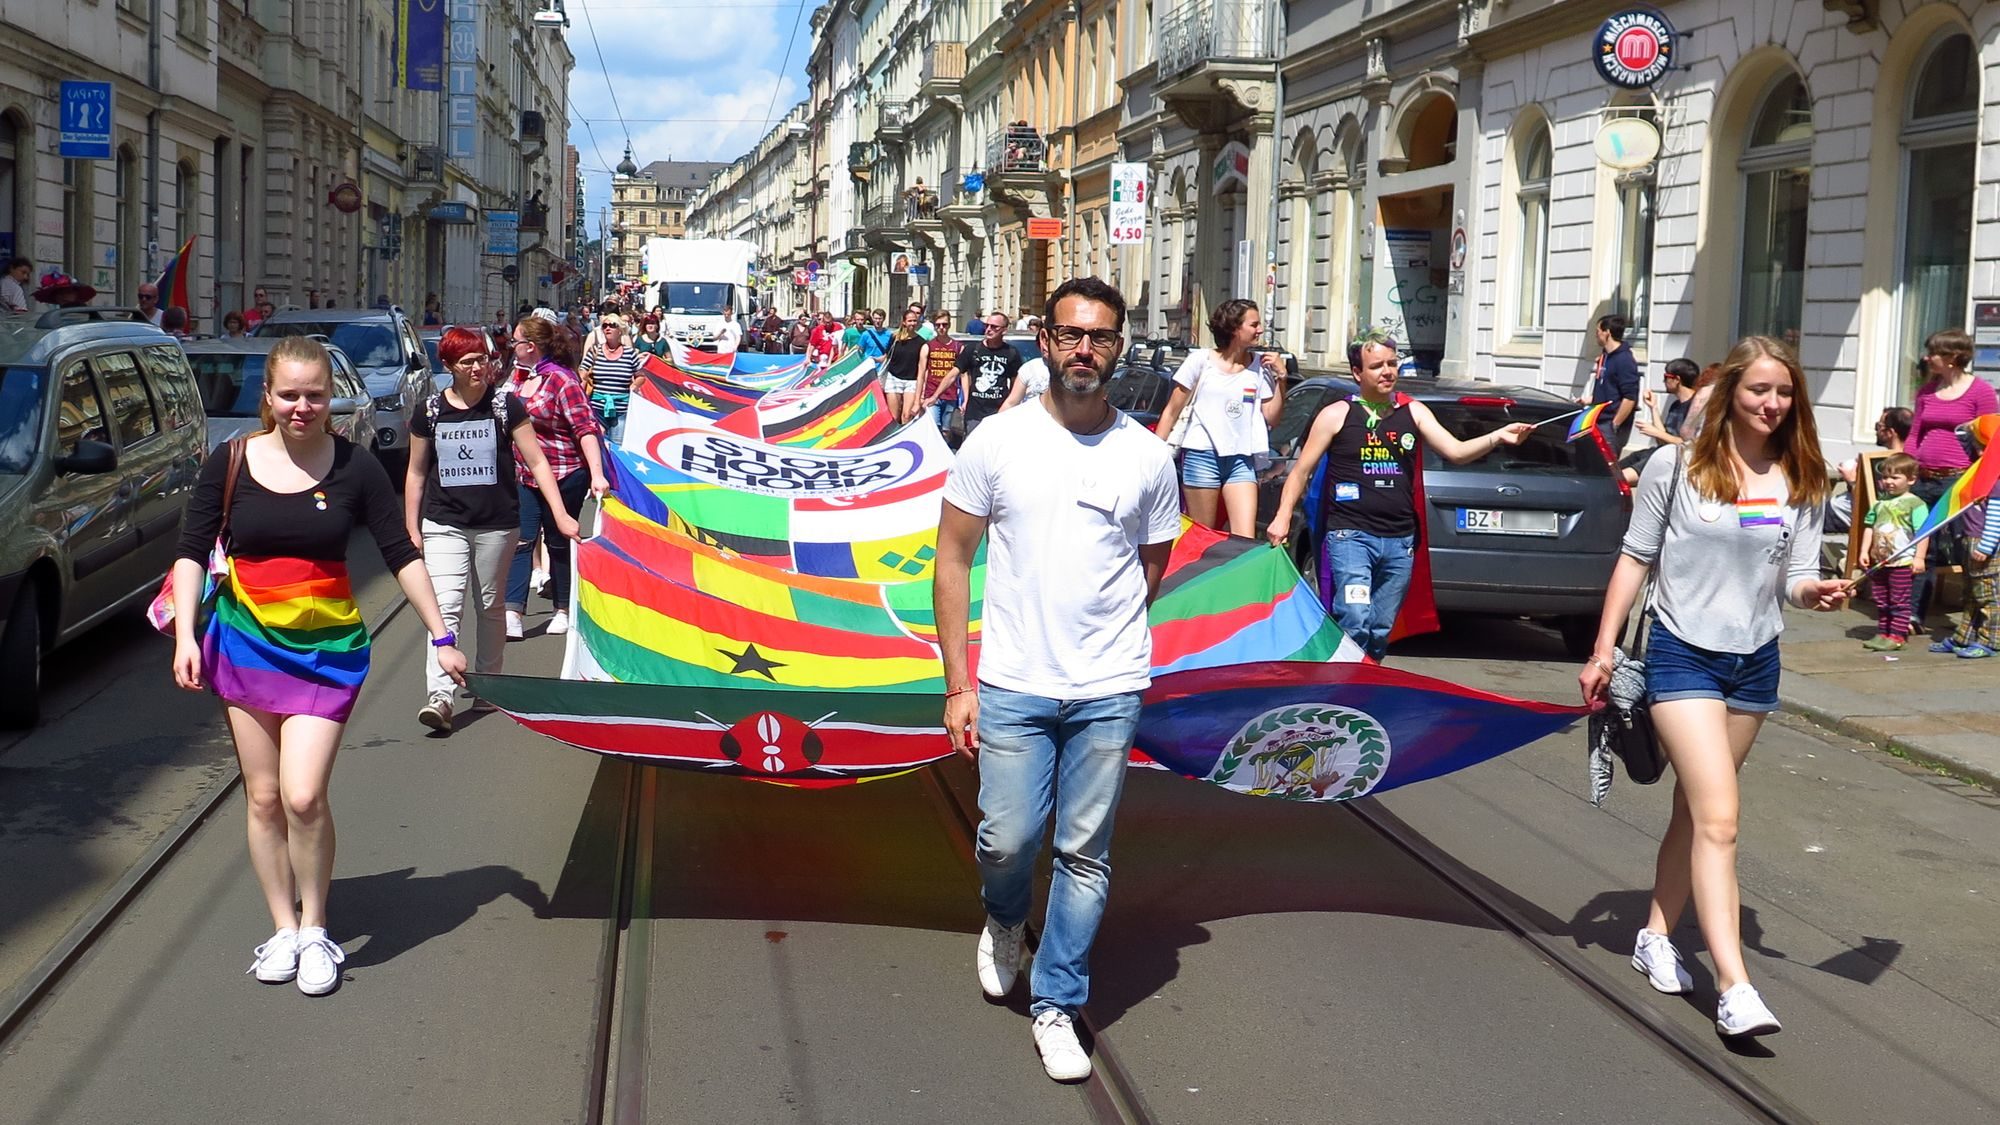 Das riesige Banner zeigt die Flaggen der Länder, in denen Homosexualität noch strafbar ist.